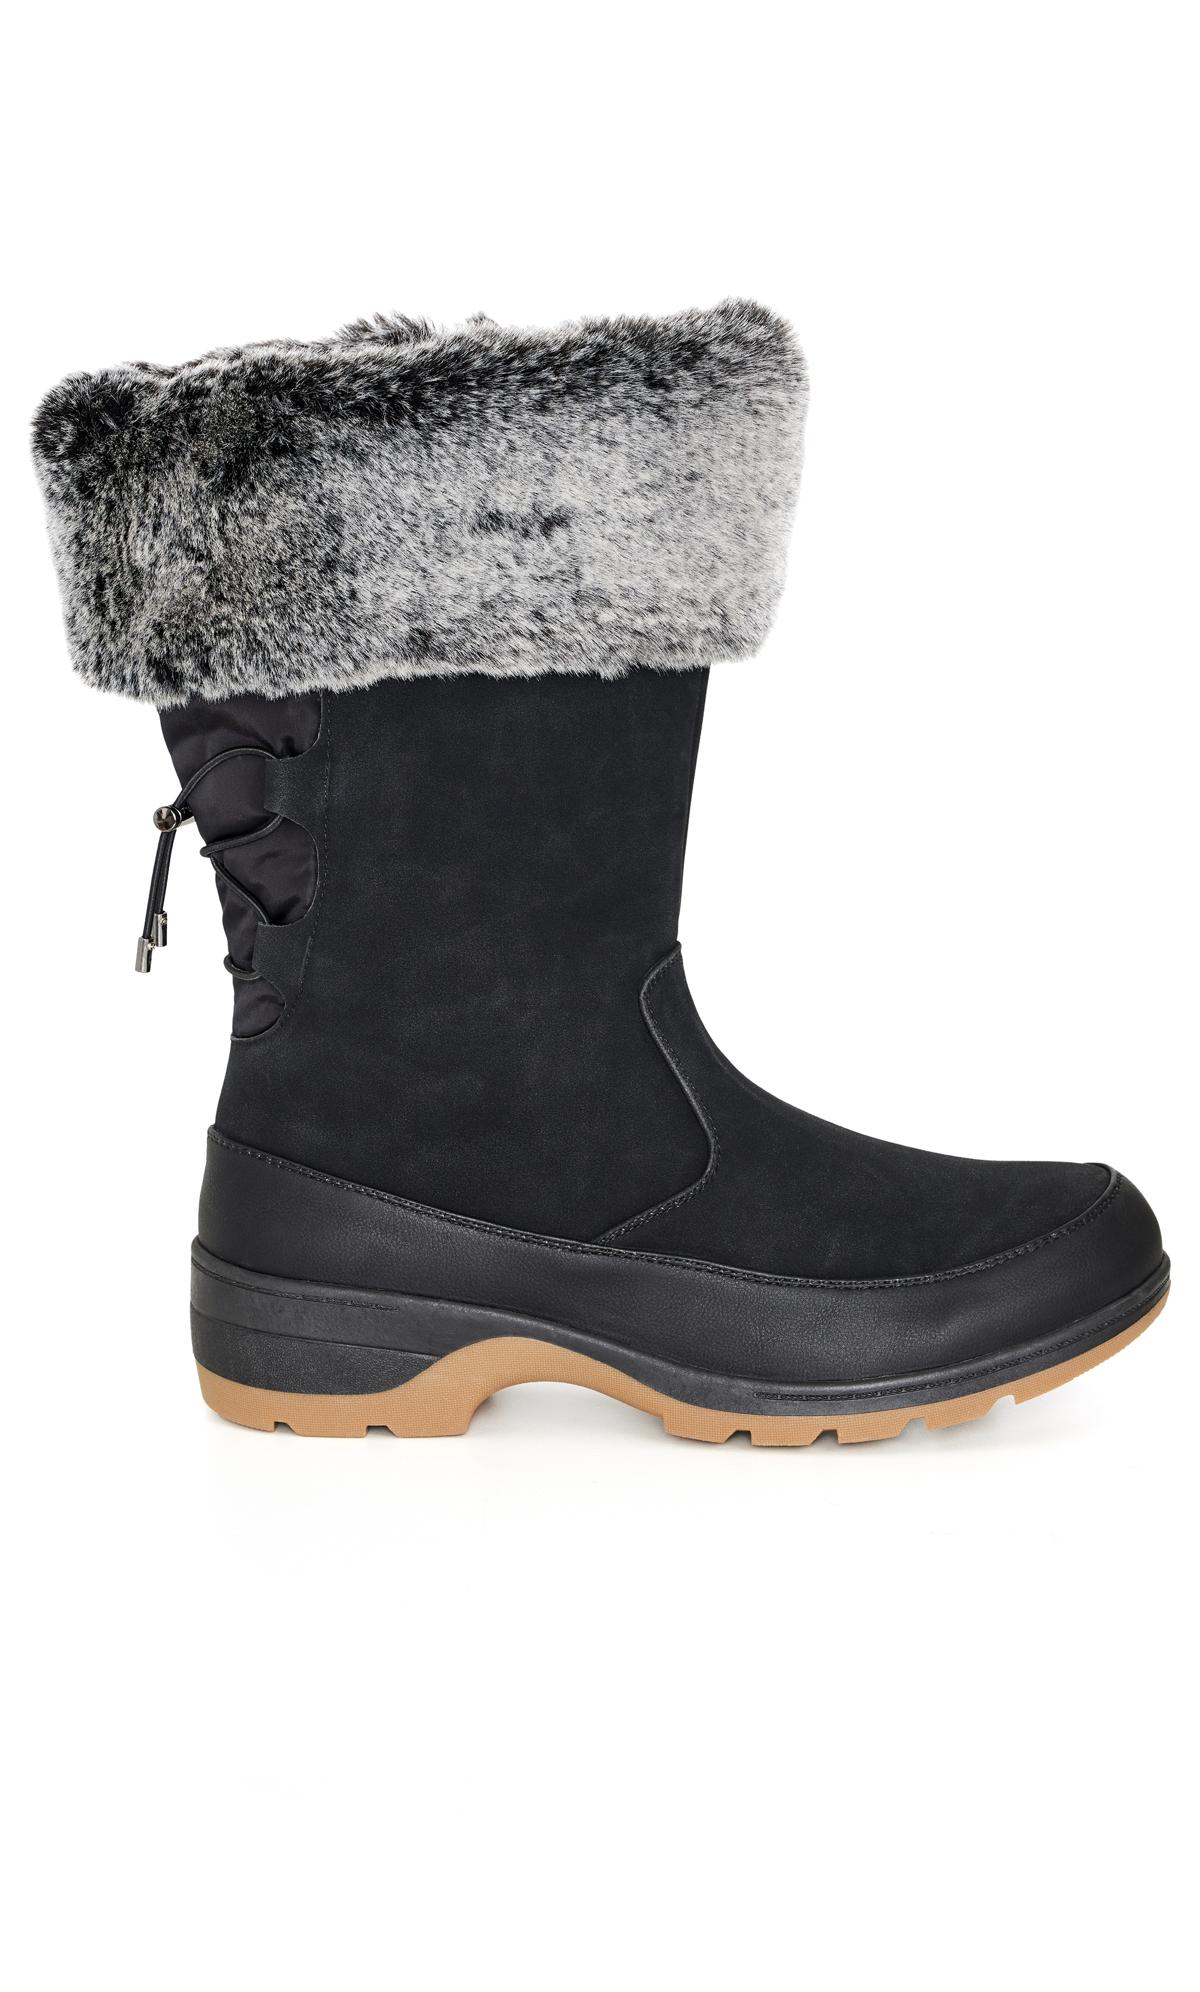 Evans WIDE FIT Black Faux Fur Lined Snow Boots 1